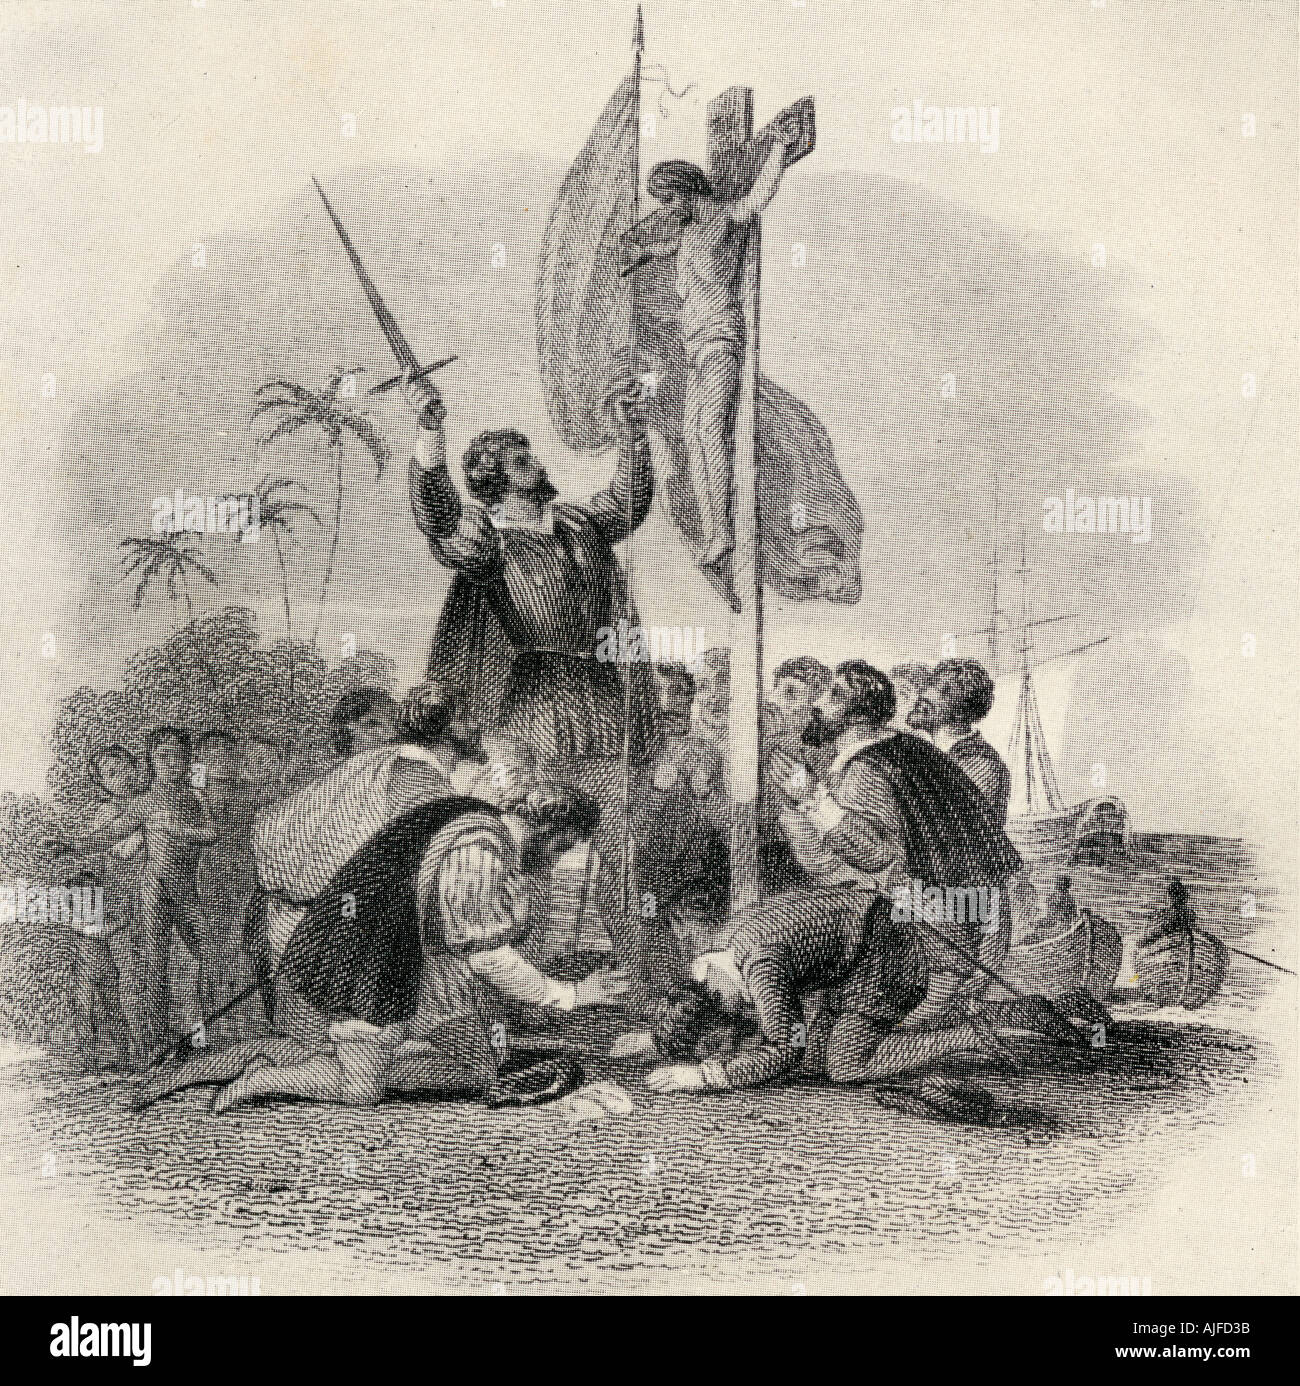 Desembarco de Colón en el nuevo mundo. Cristóbal Colón, 1451 - 1506. El explorador italiano y descubridor de América. Foto de stock